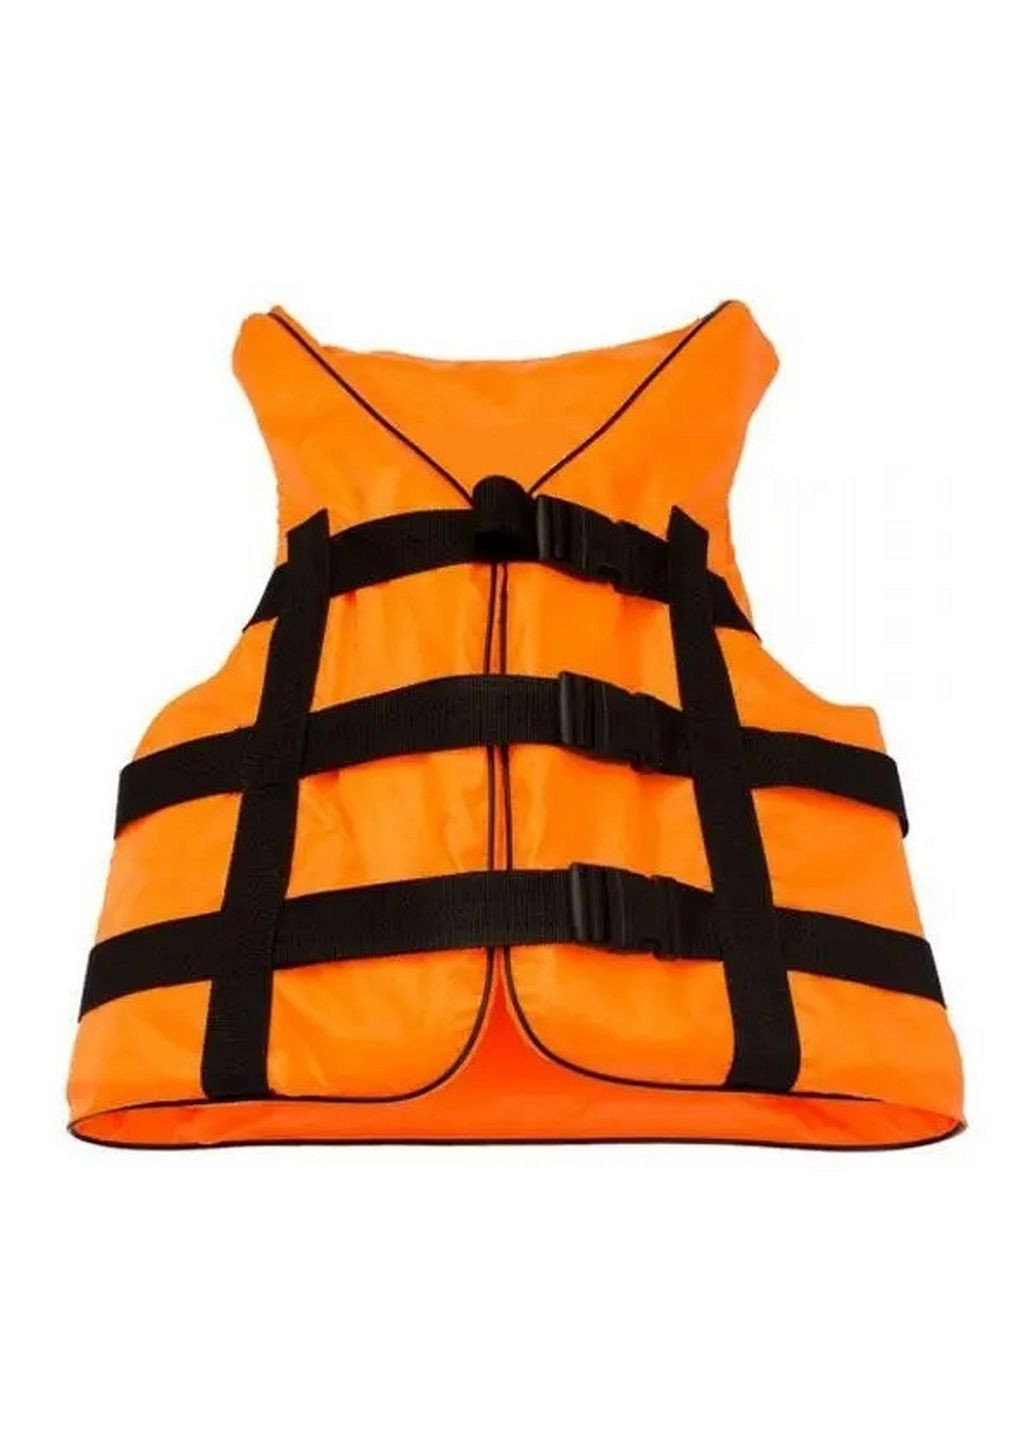 Спасательный жилет оранж 110-130 кг Ranger (292577817)